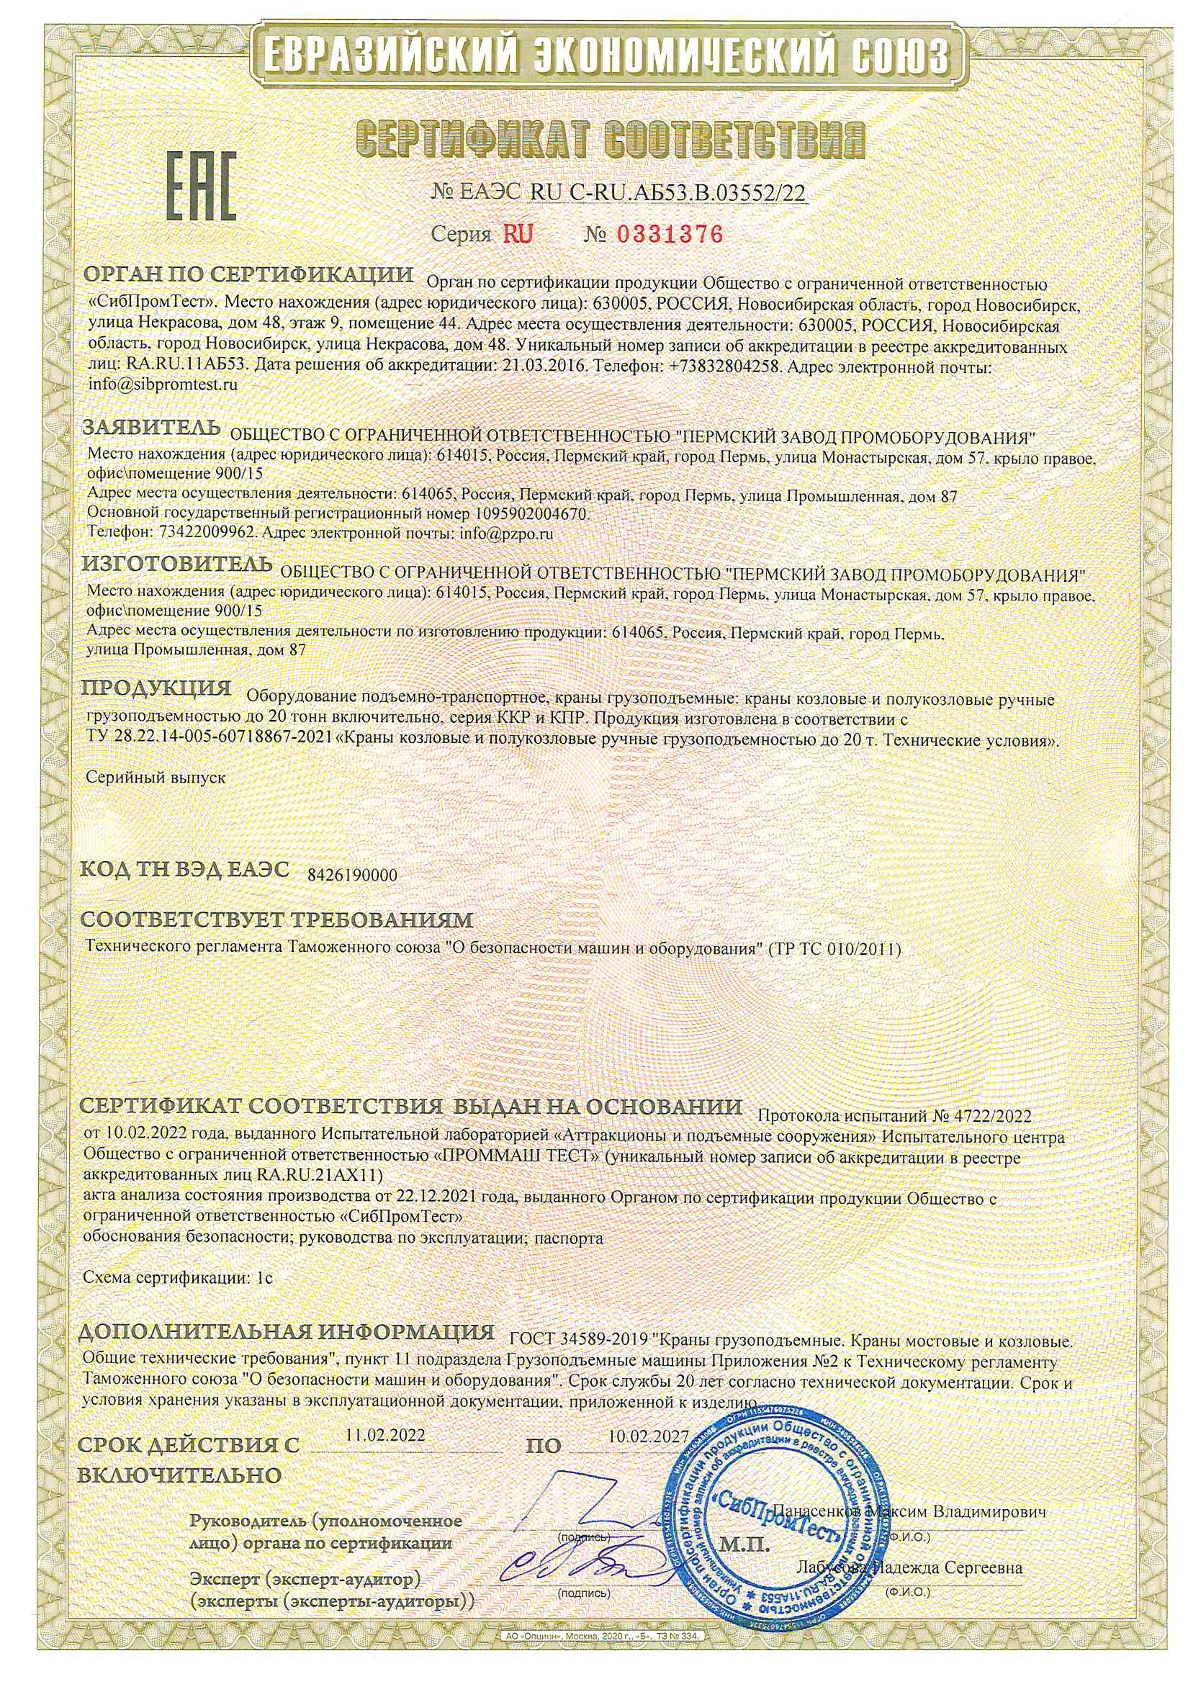 Сертификат ТР ТС - Козловые и полукозловые ручные до 20 тонн